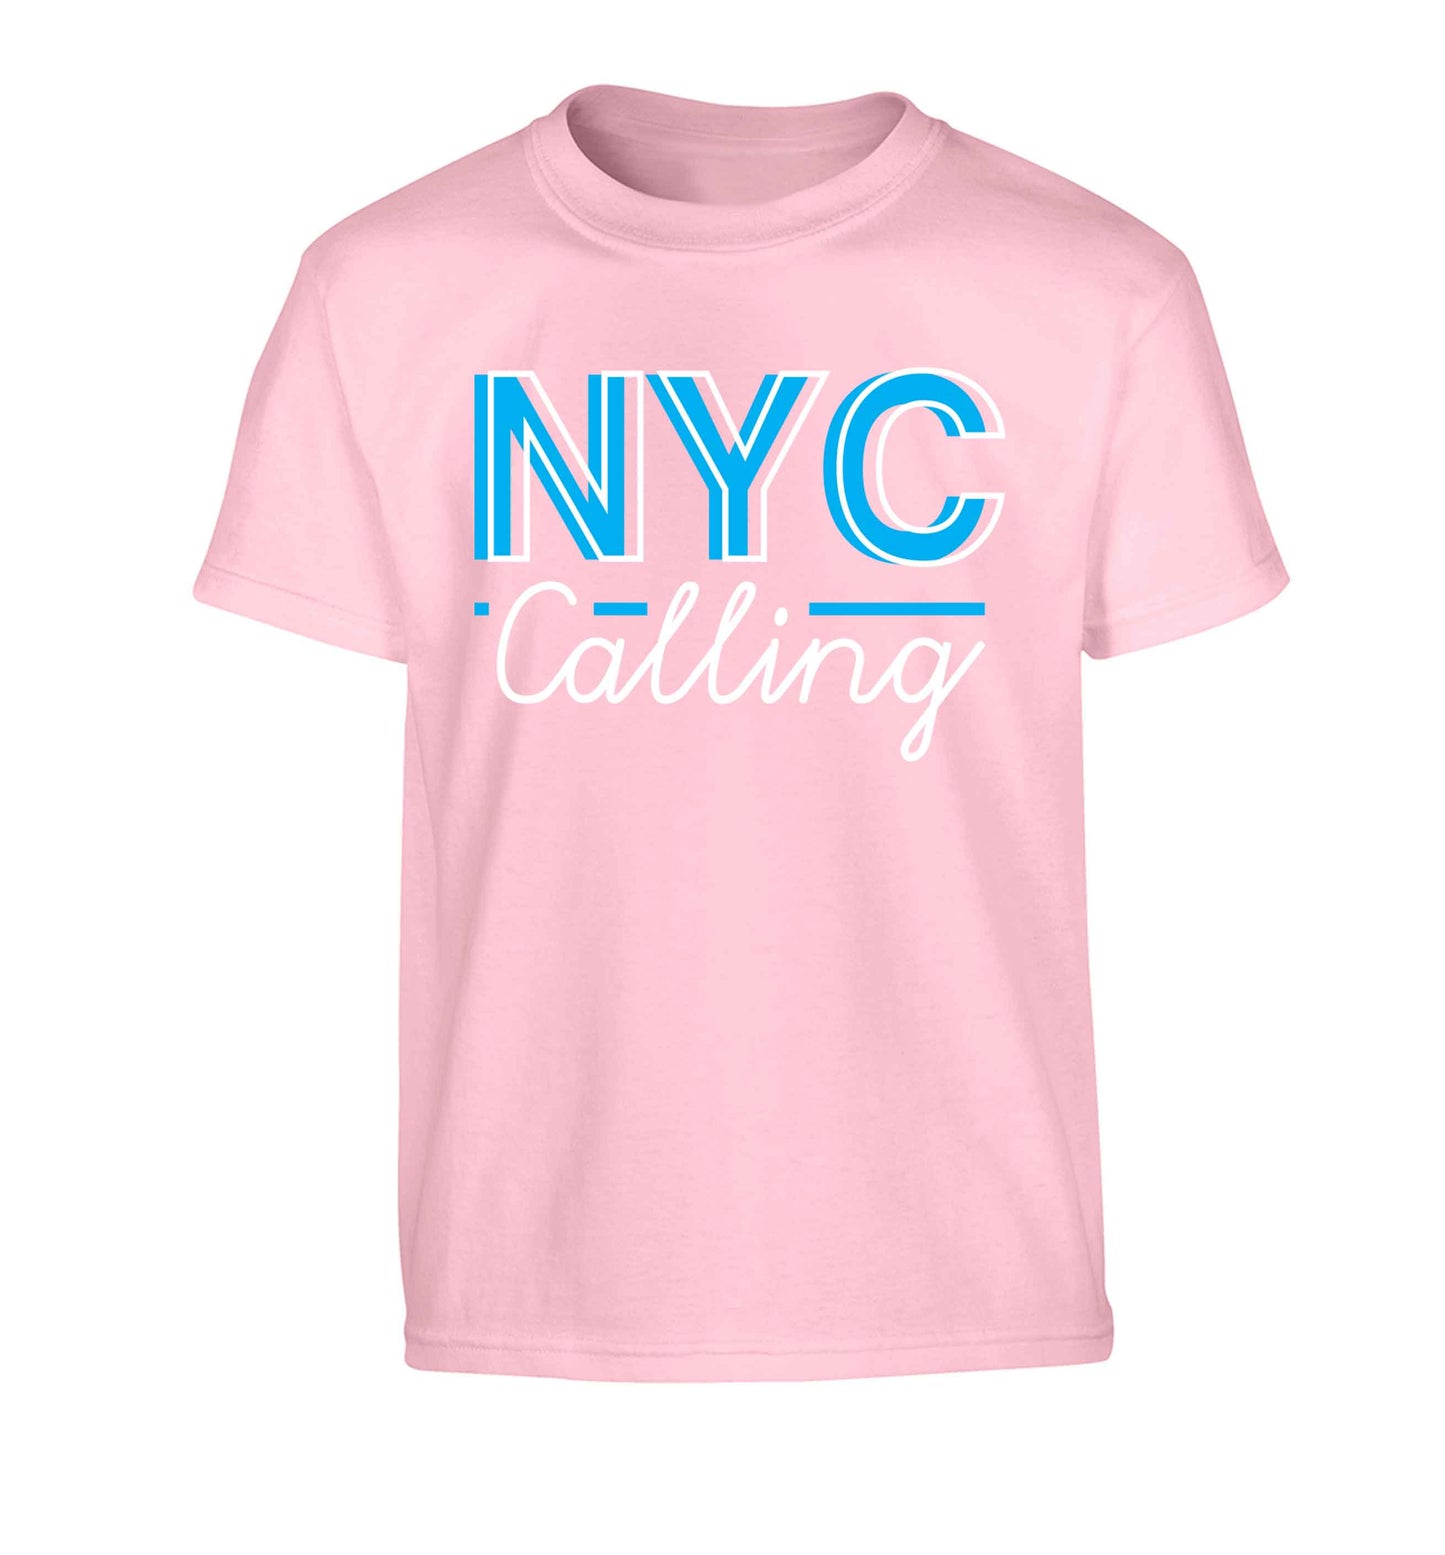 NYC calling Children's light pink Tshirt 12-13 Years